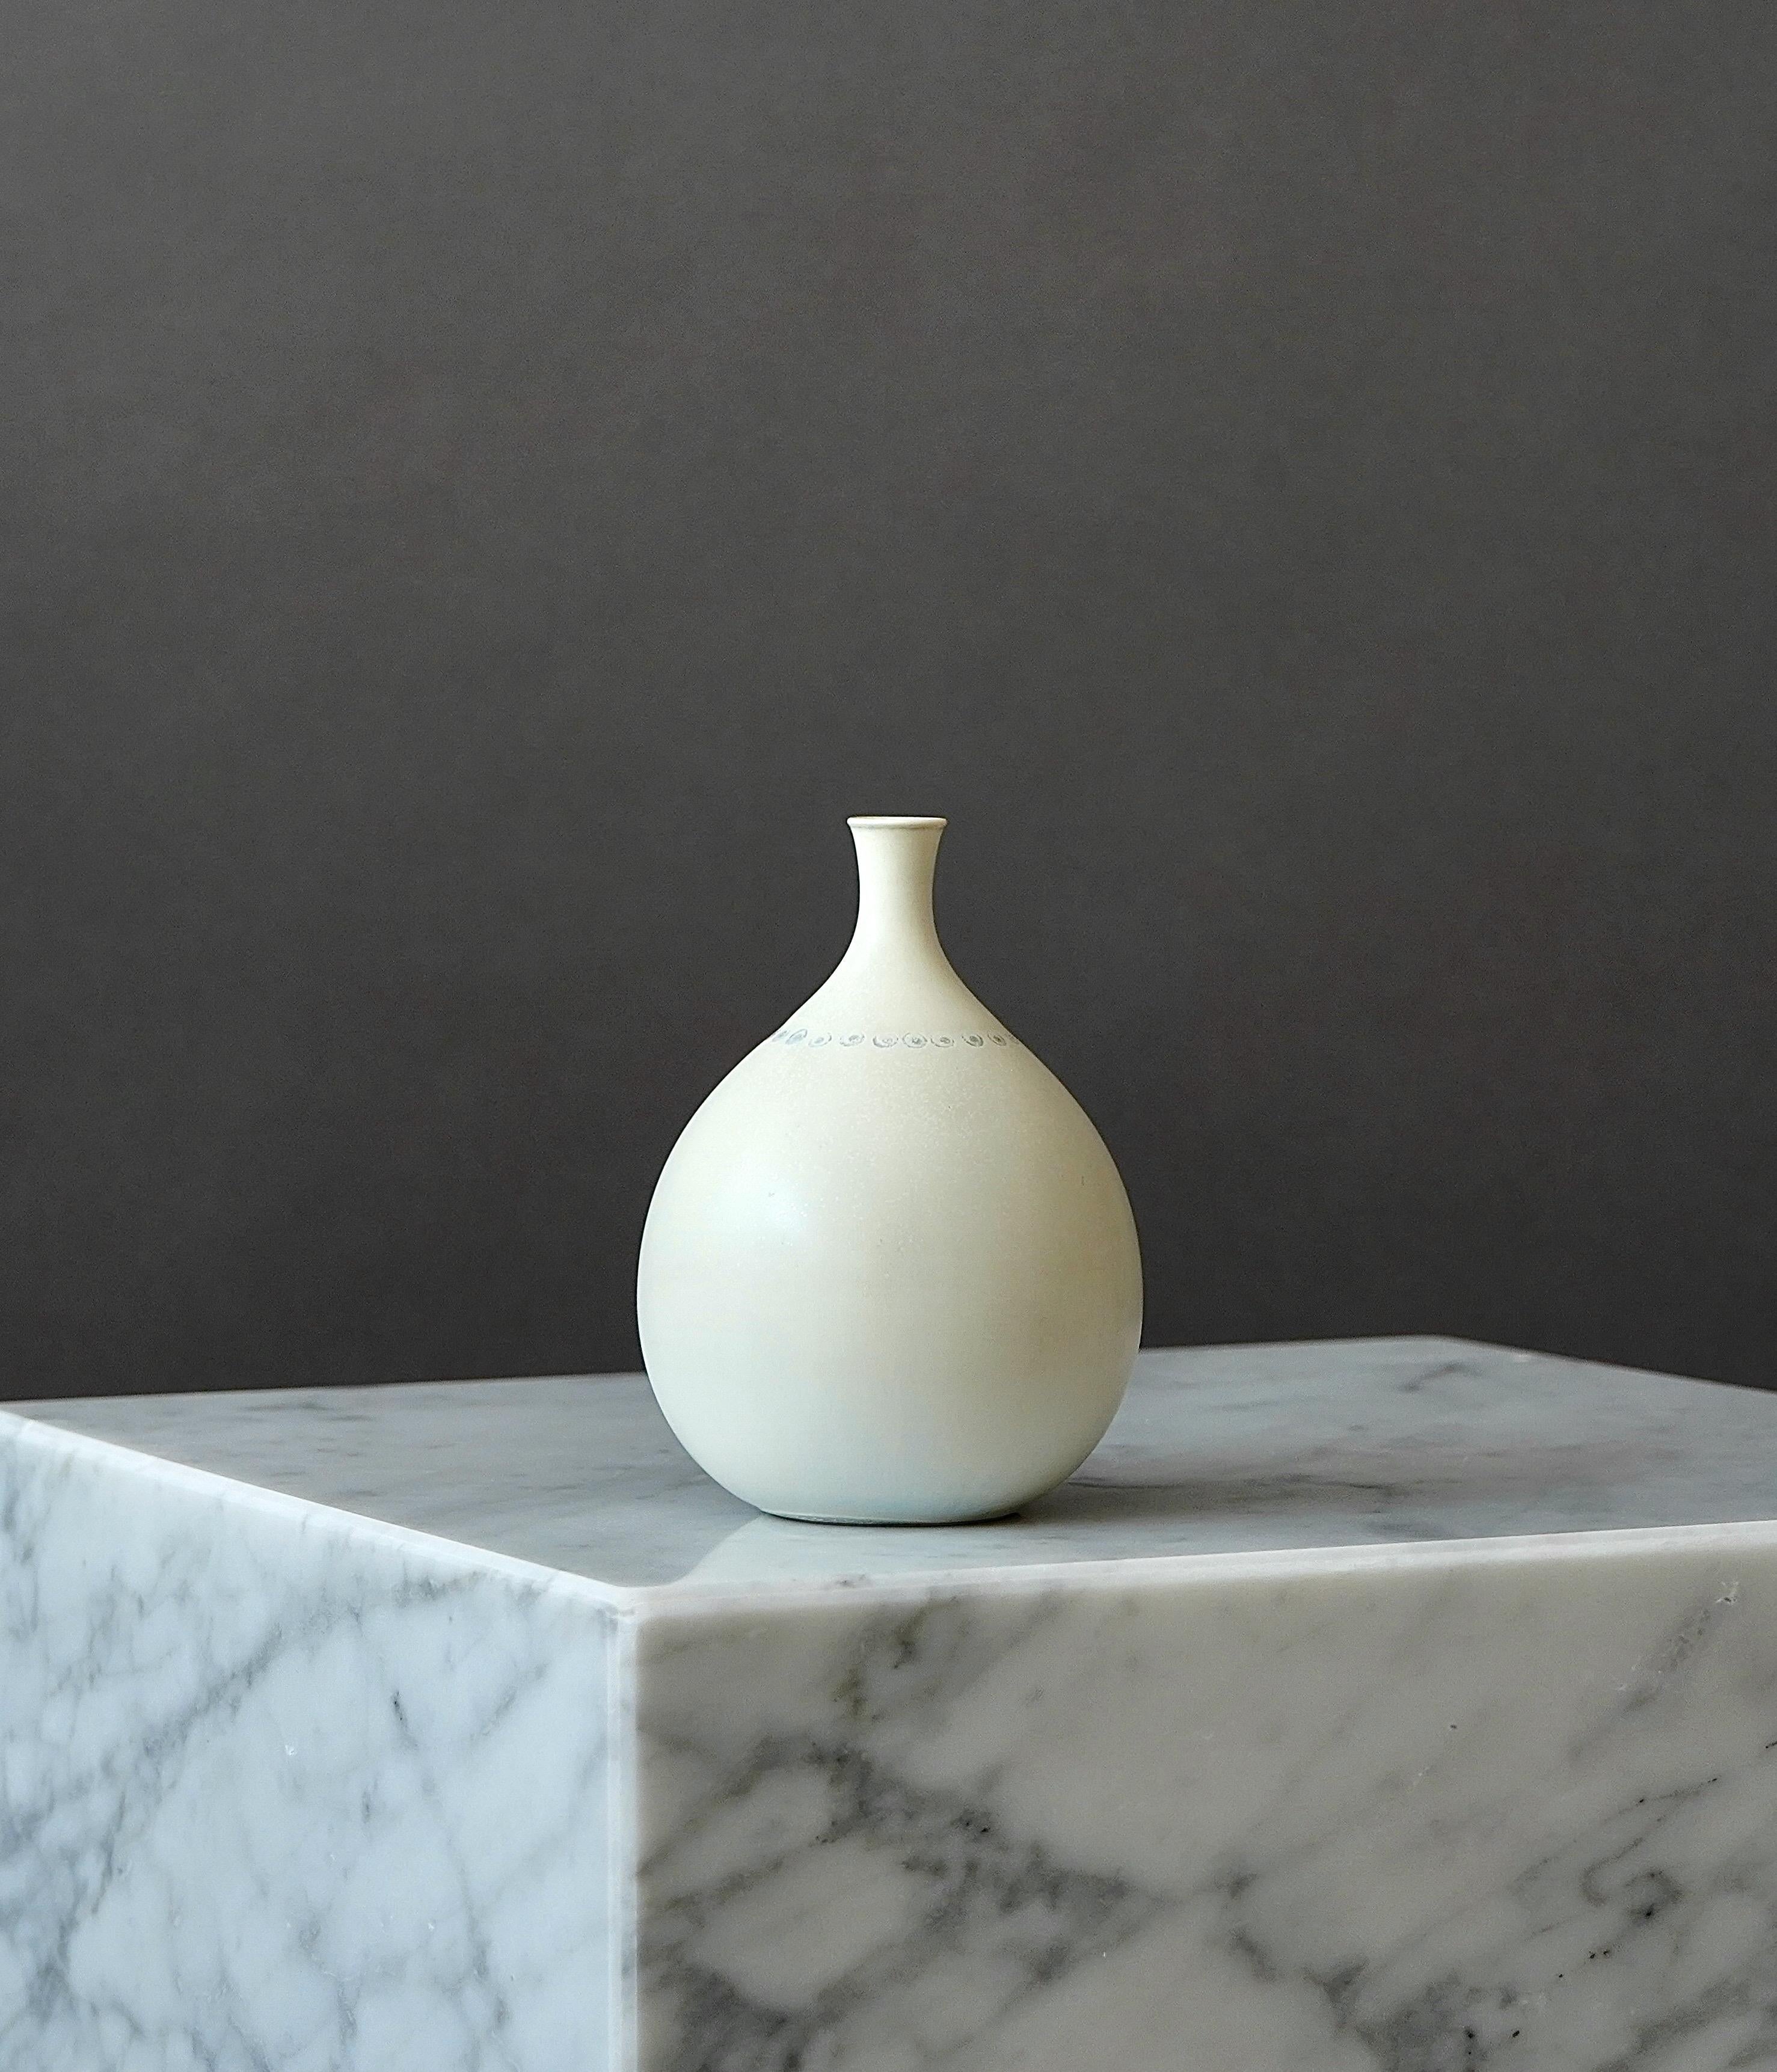 Turned Unique Stoneware Vase by Stig Lindberg for Gustavsberg Studio, Sweden, 1960 For Sale